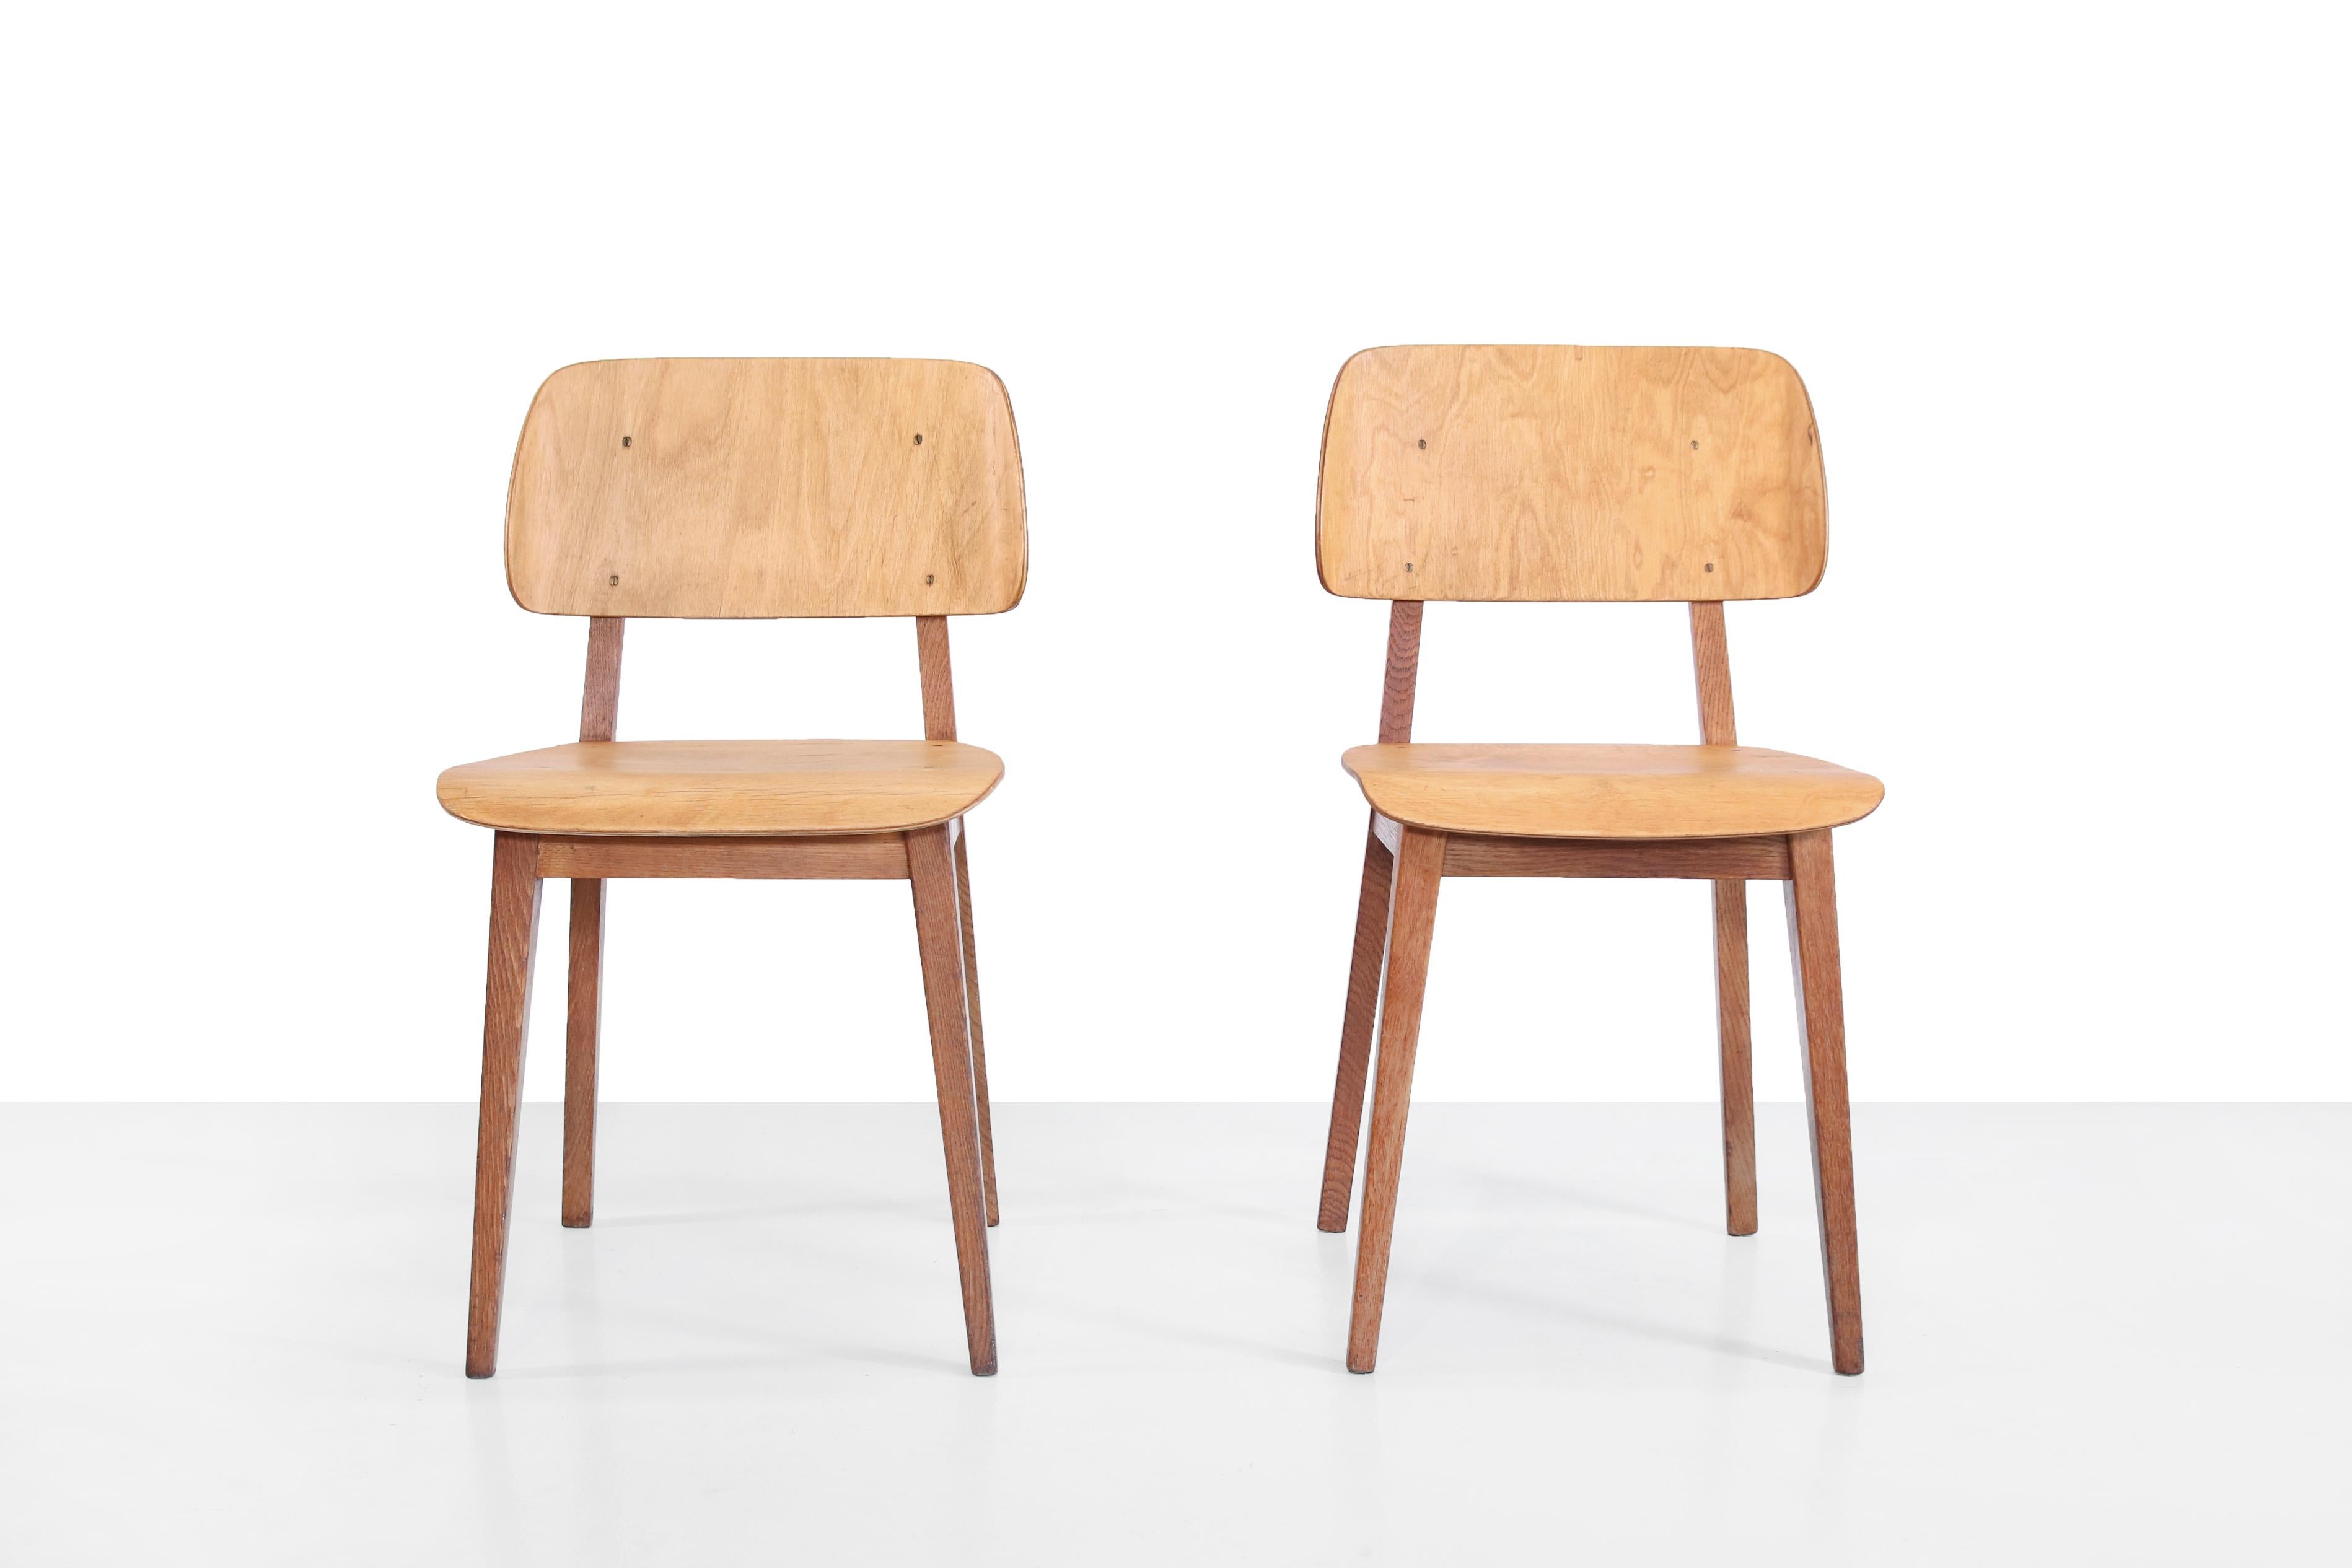 Magnifiques et rares chaises Pastoe conçues par Dirk Braakman, le père de Cees Braakman, dans les années 1940. Les chaises sont fabriquées en chêne massif et en contreplaqué cintré. A notre avis, il s'agit de l'ancienne 